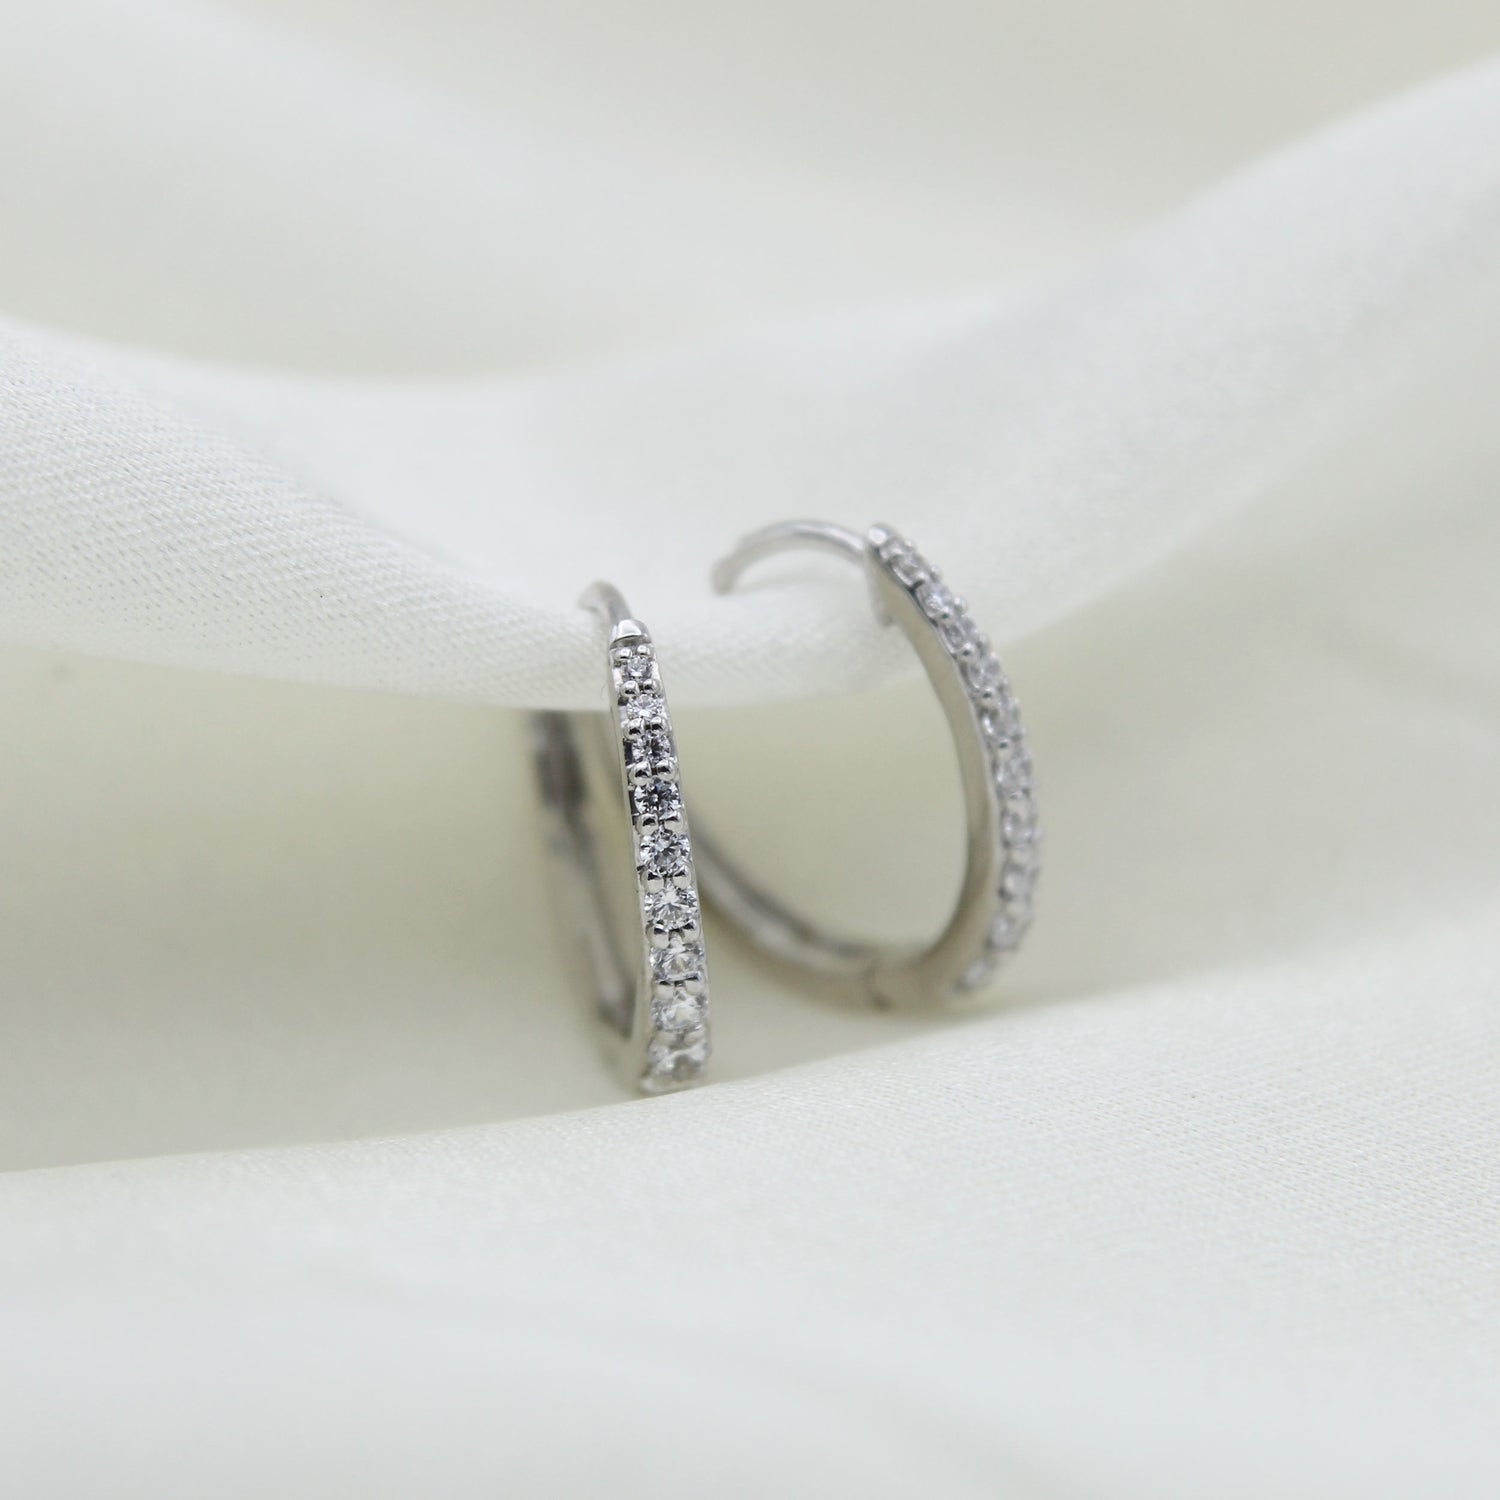 1/2 Cttw Diamond Oval Hoop Earrings set in 925 Sterling Silver